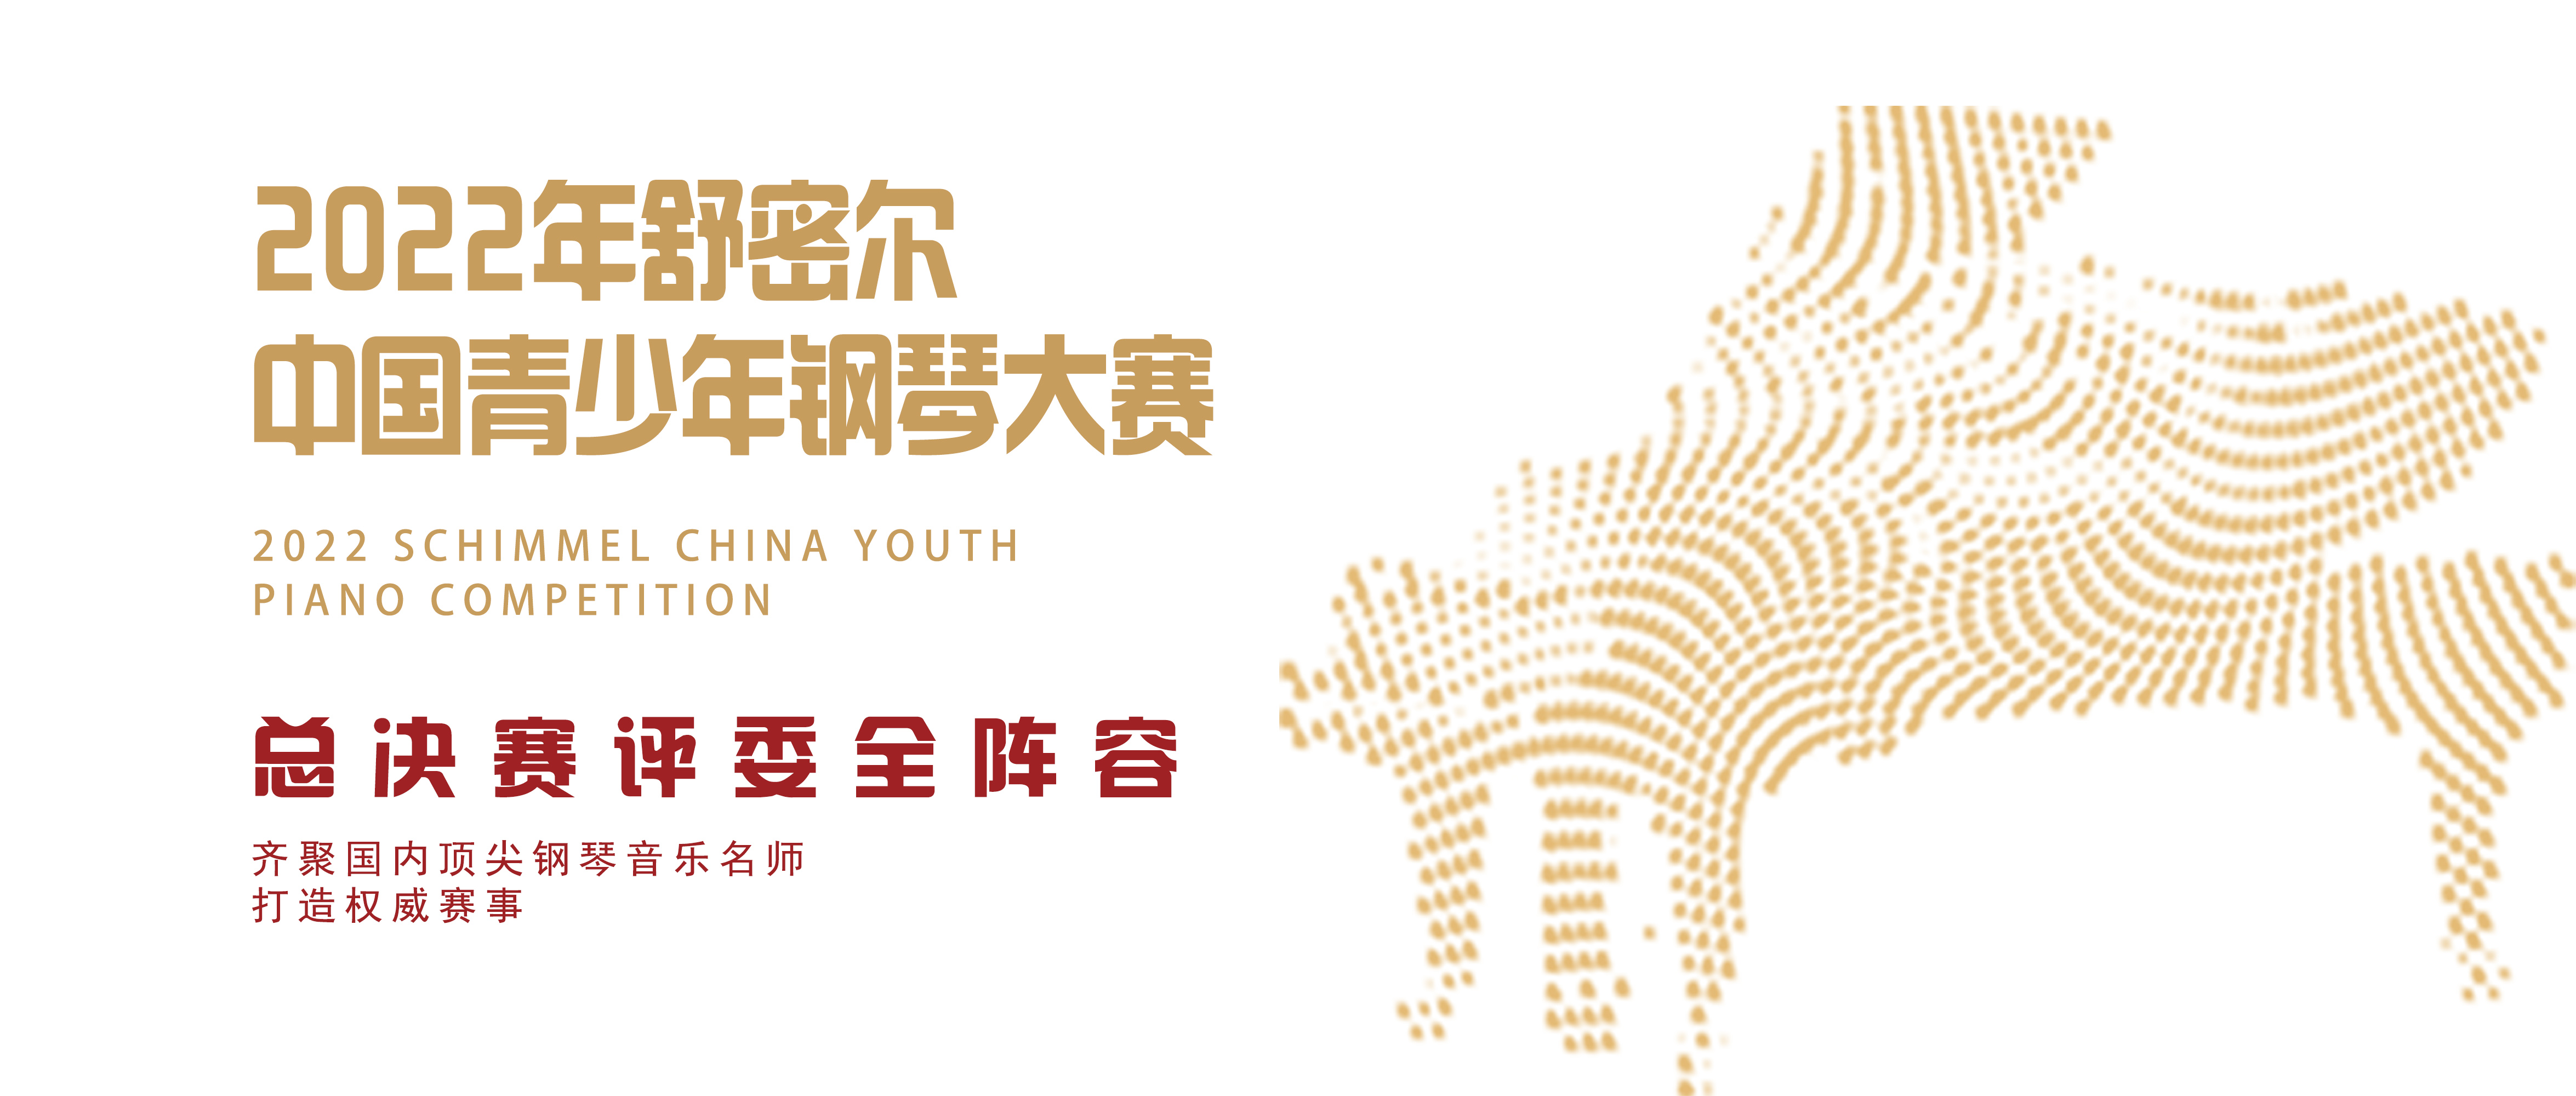 评委全阵容！名师集结——2022年舒密尔中国青少年钢琴大赛总决赛